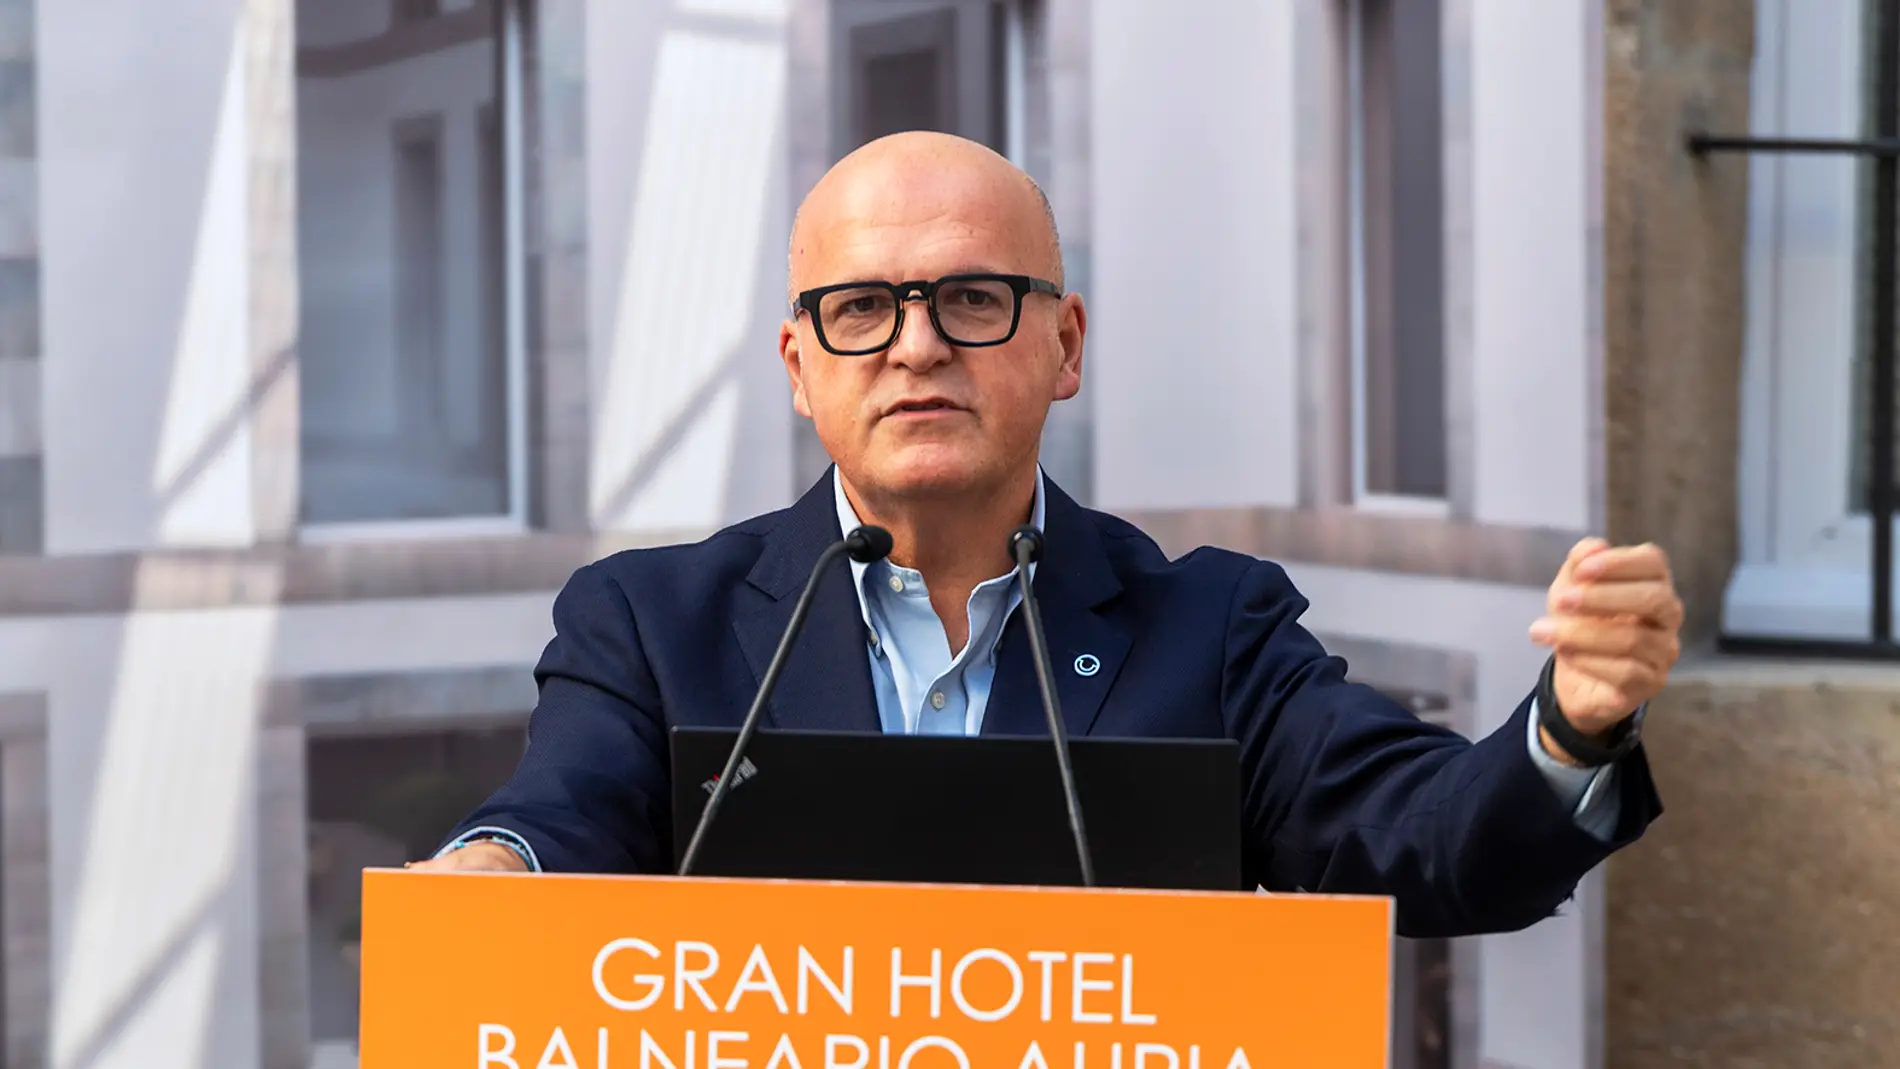 Manuel Baltar "Ourense e a provincia poderán presumir do hotel balneario máis moderno"